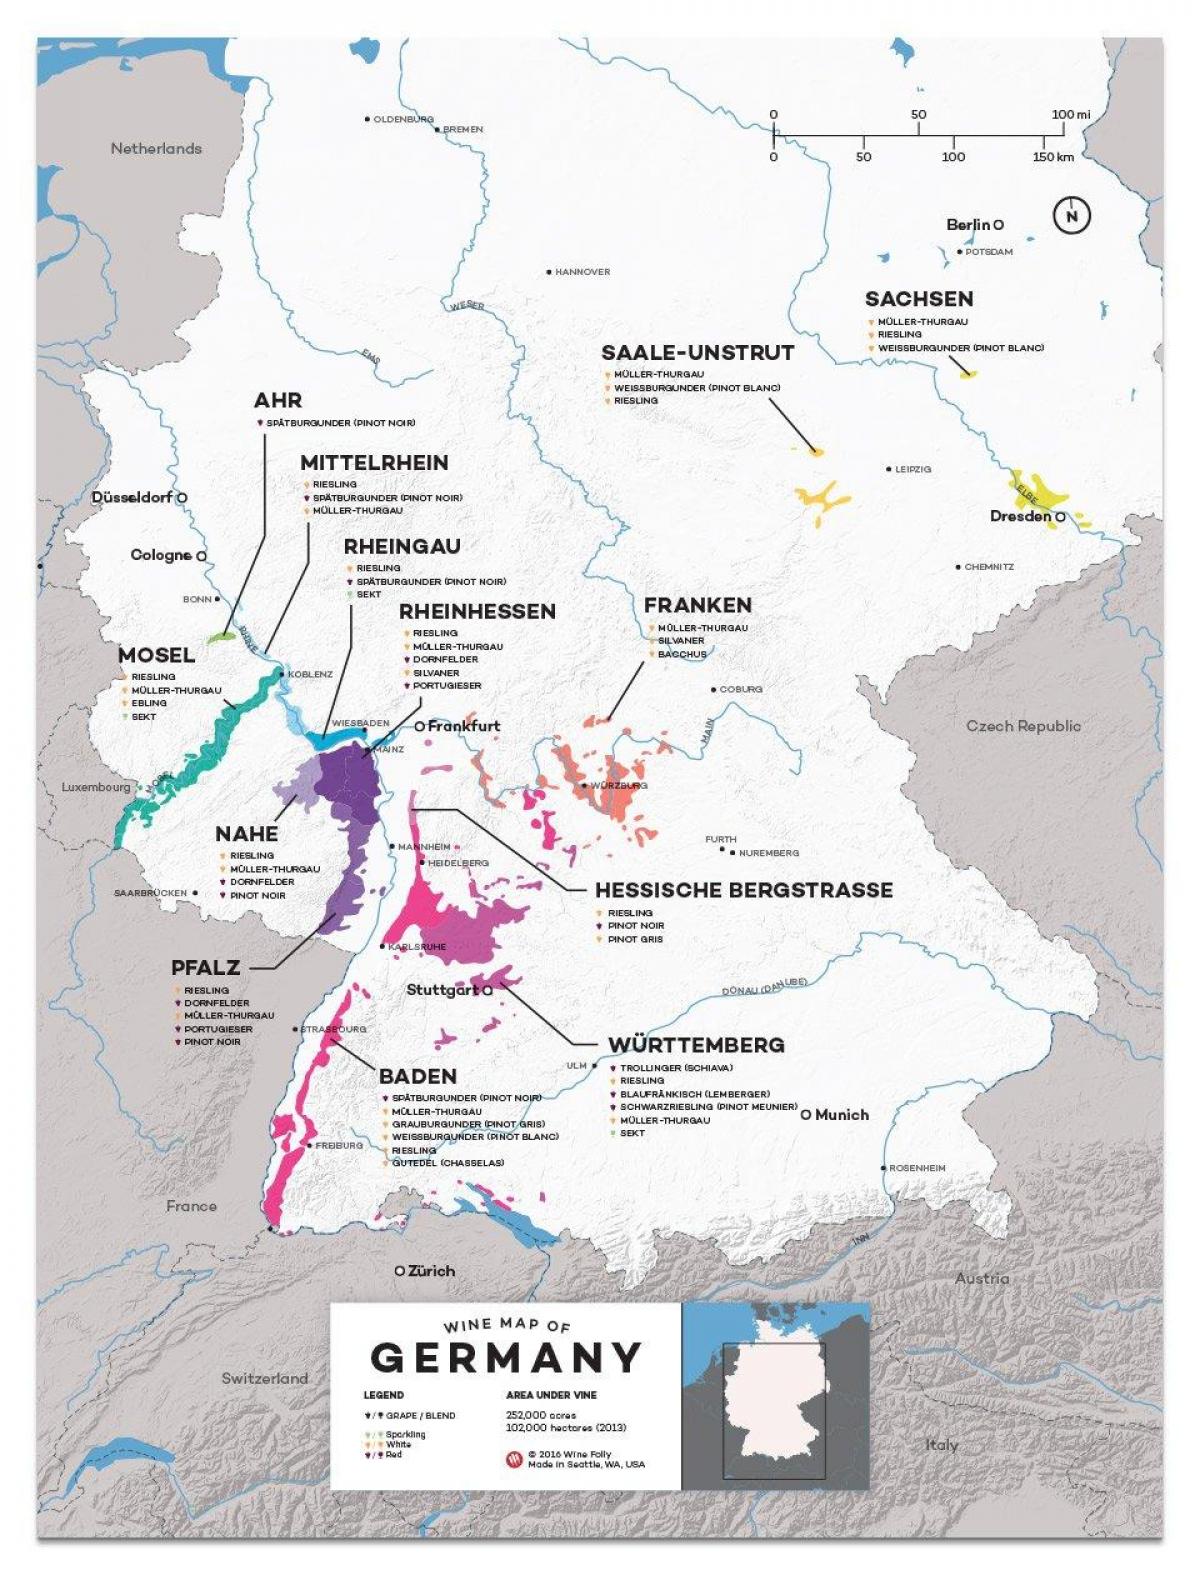 خريطة ألمانيا النبيذ